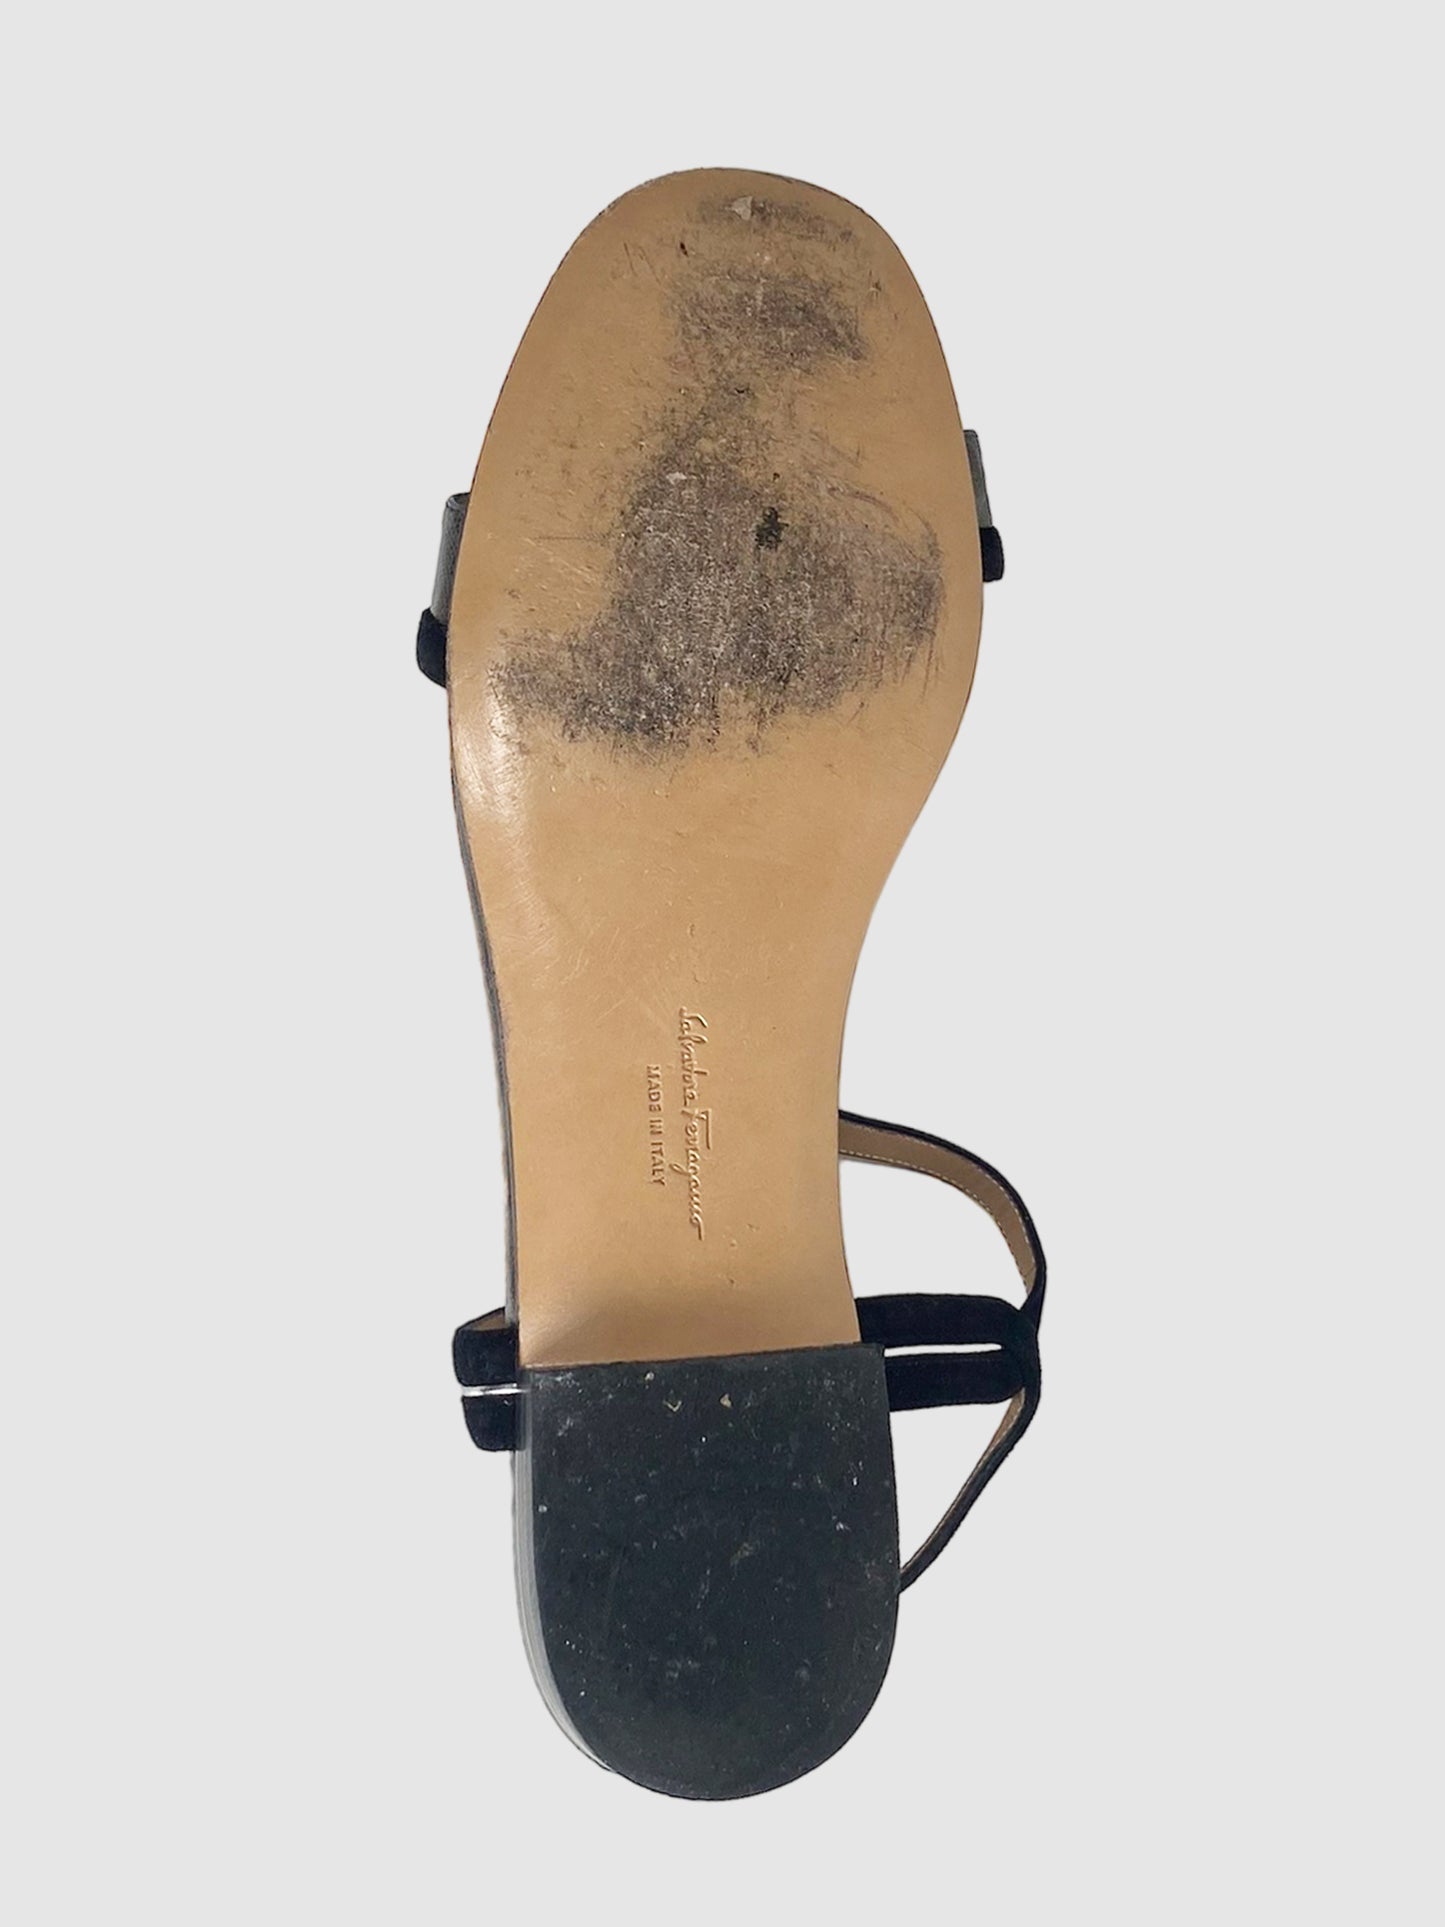 Salvatore Ferragamo Leather Sandal - Size 7.5